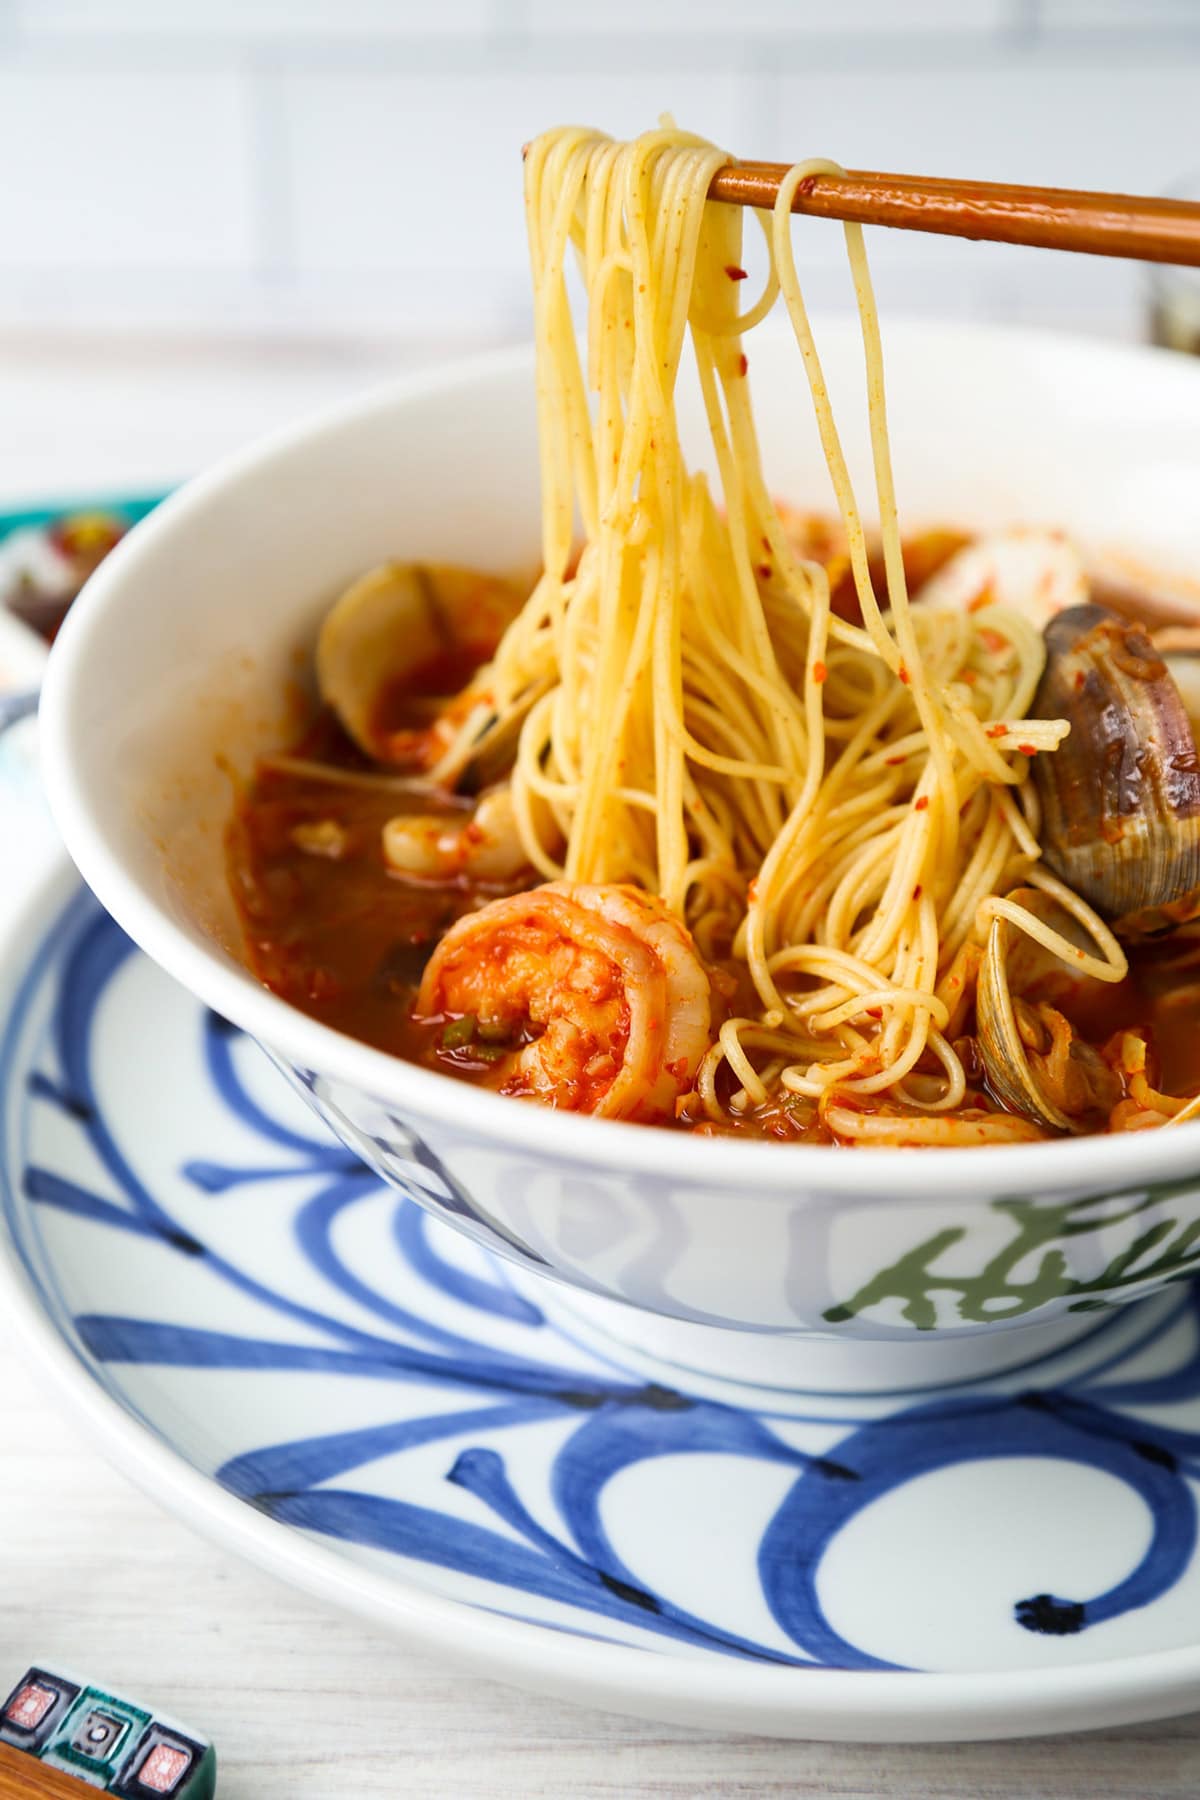 Jjamppong - Korean spicy seafood noodle soup